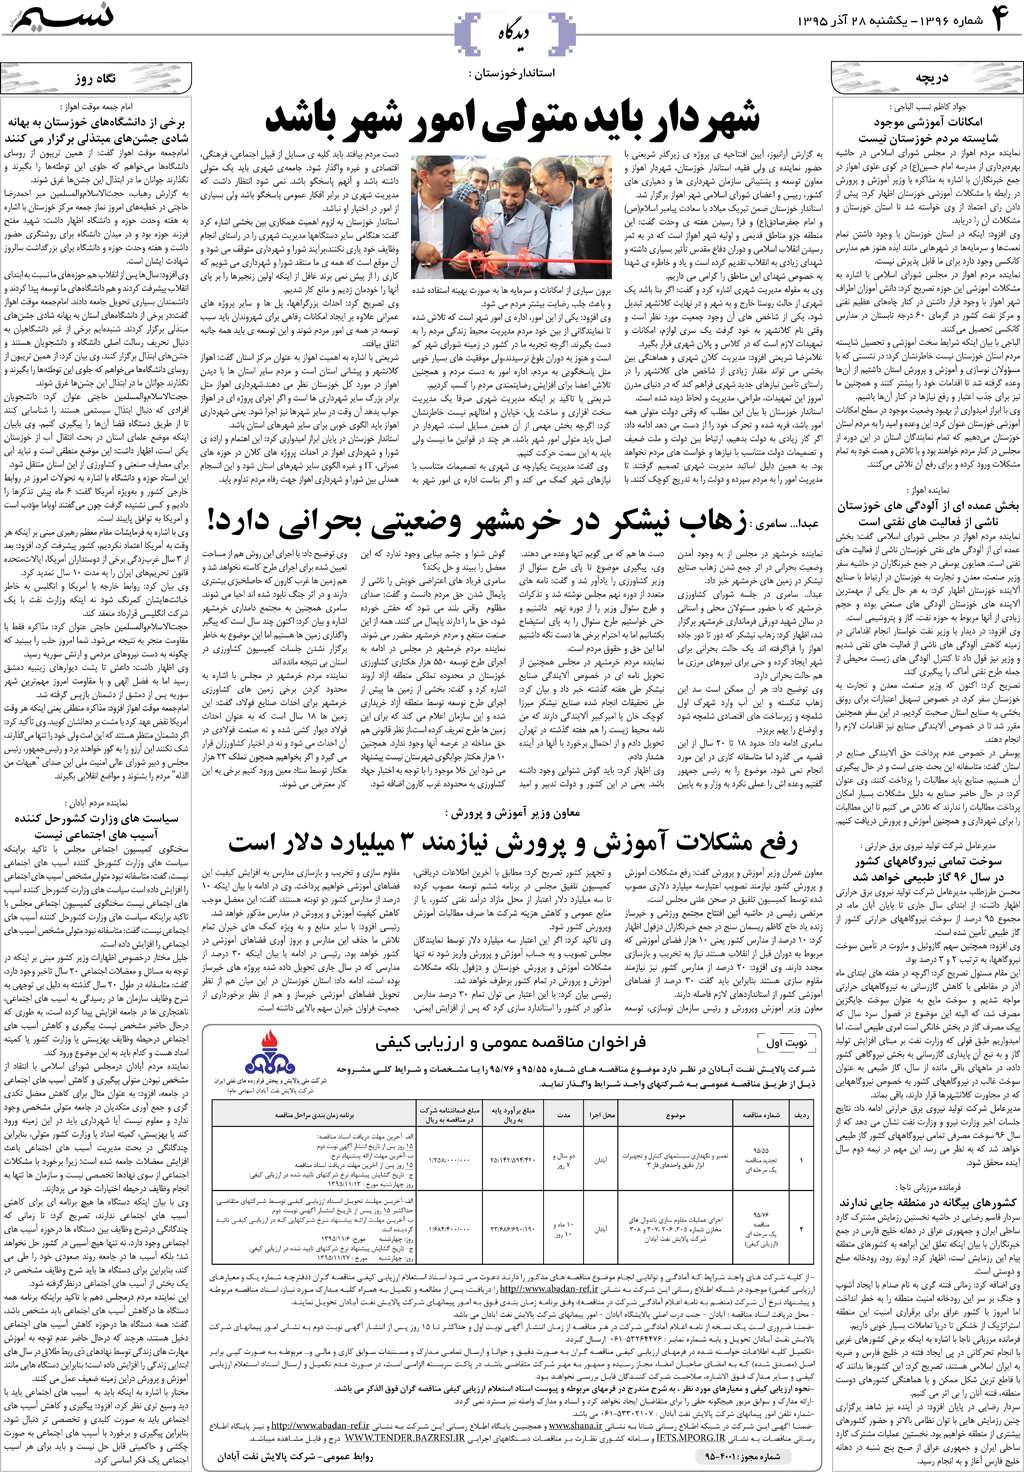 صفحه دیدگاه روزنامه نسیم شماره 1396